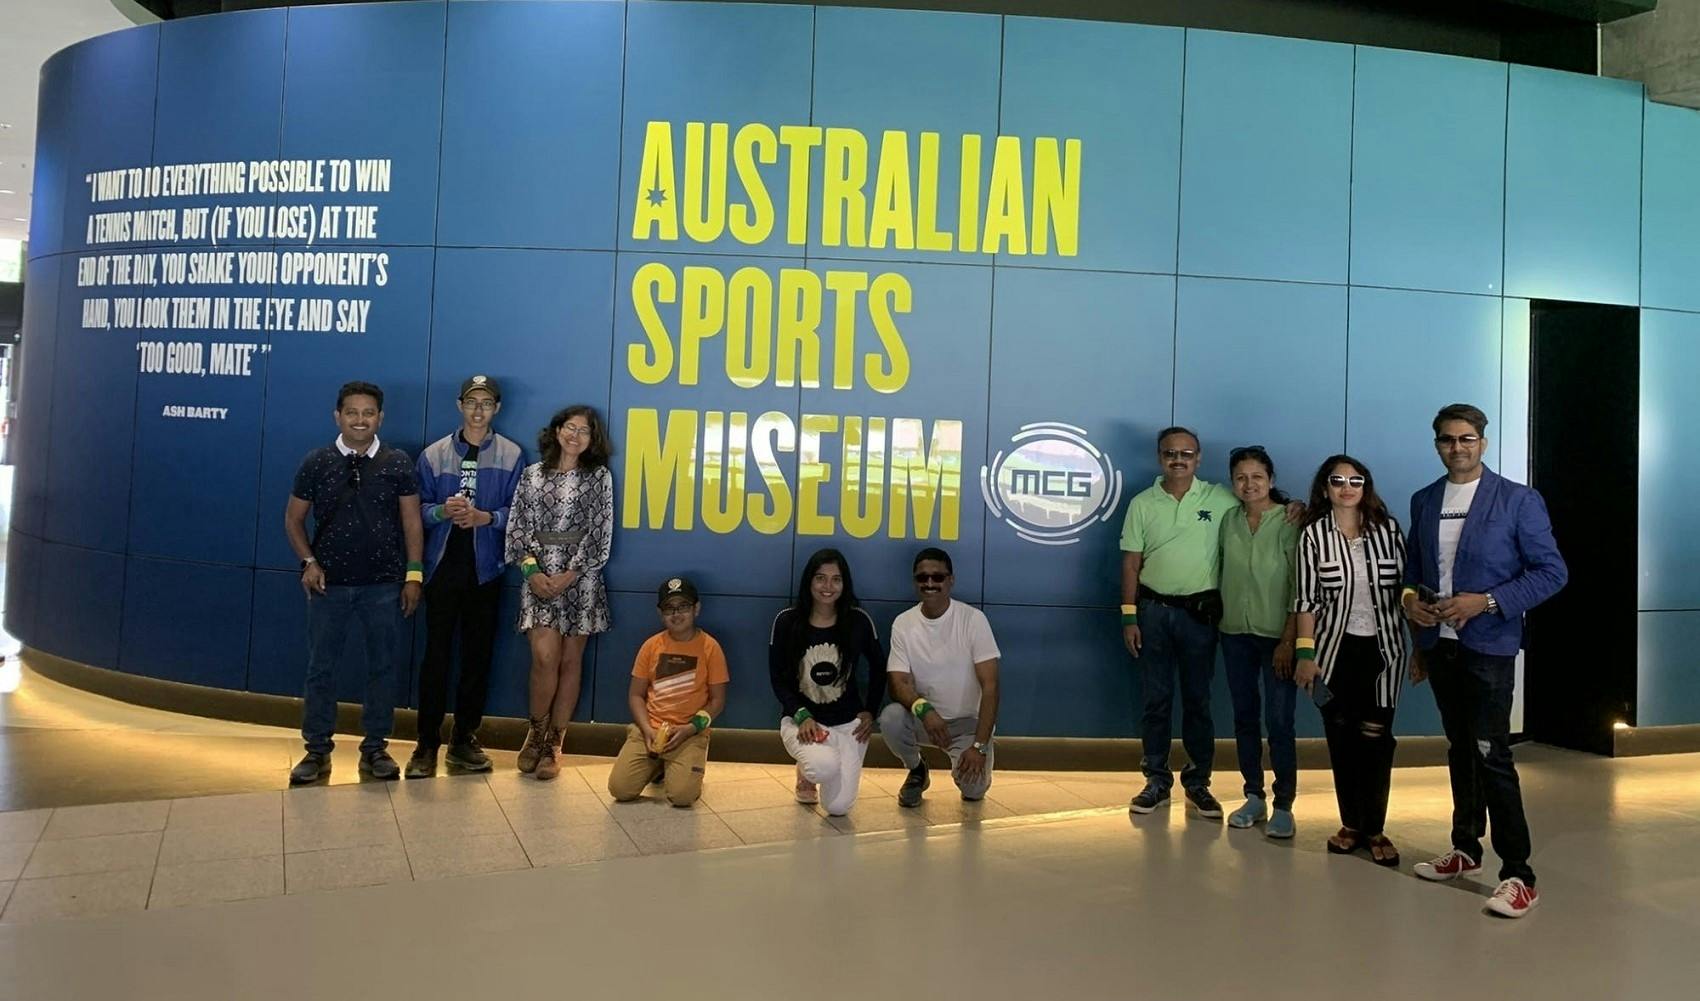 Visita al recinto deportivo de Melbourne y al Museo Australiano del Deporte